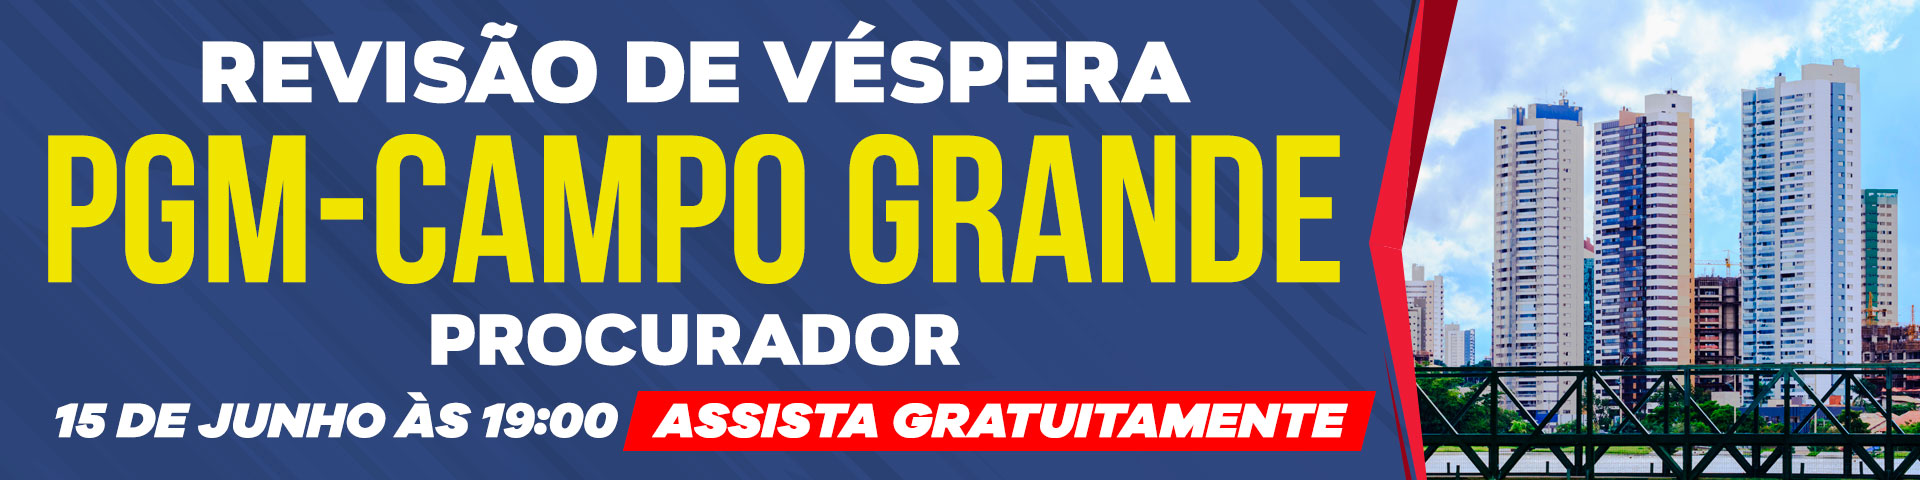 Revisão e véspera do concurso PGM Campo Grande, participe!